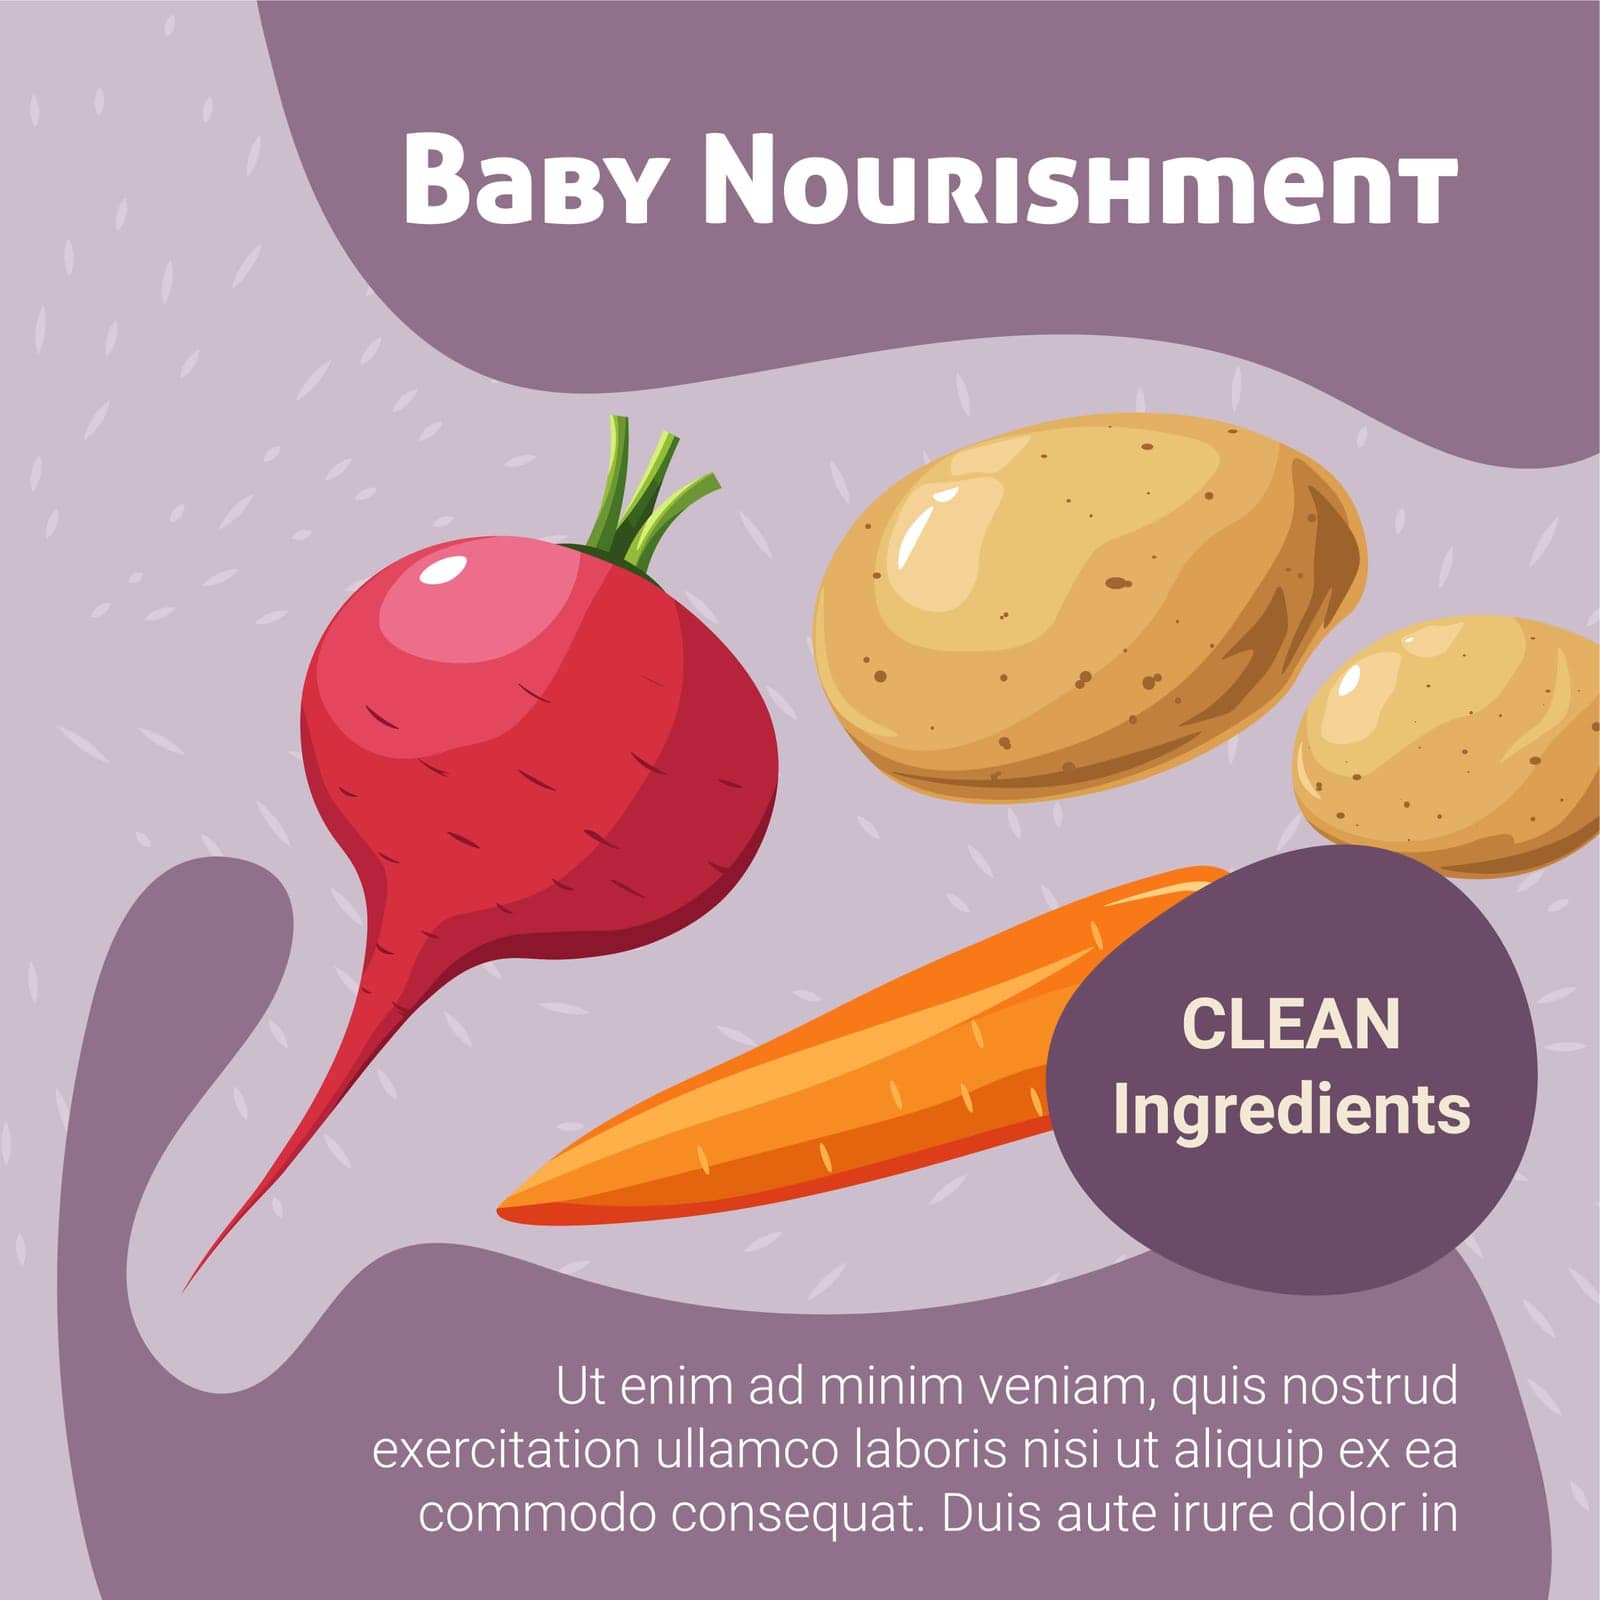 Baby nourishment clean ingredients vegetables by Sonulkaster